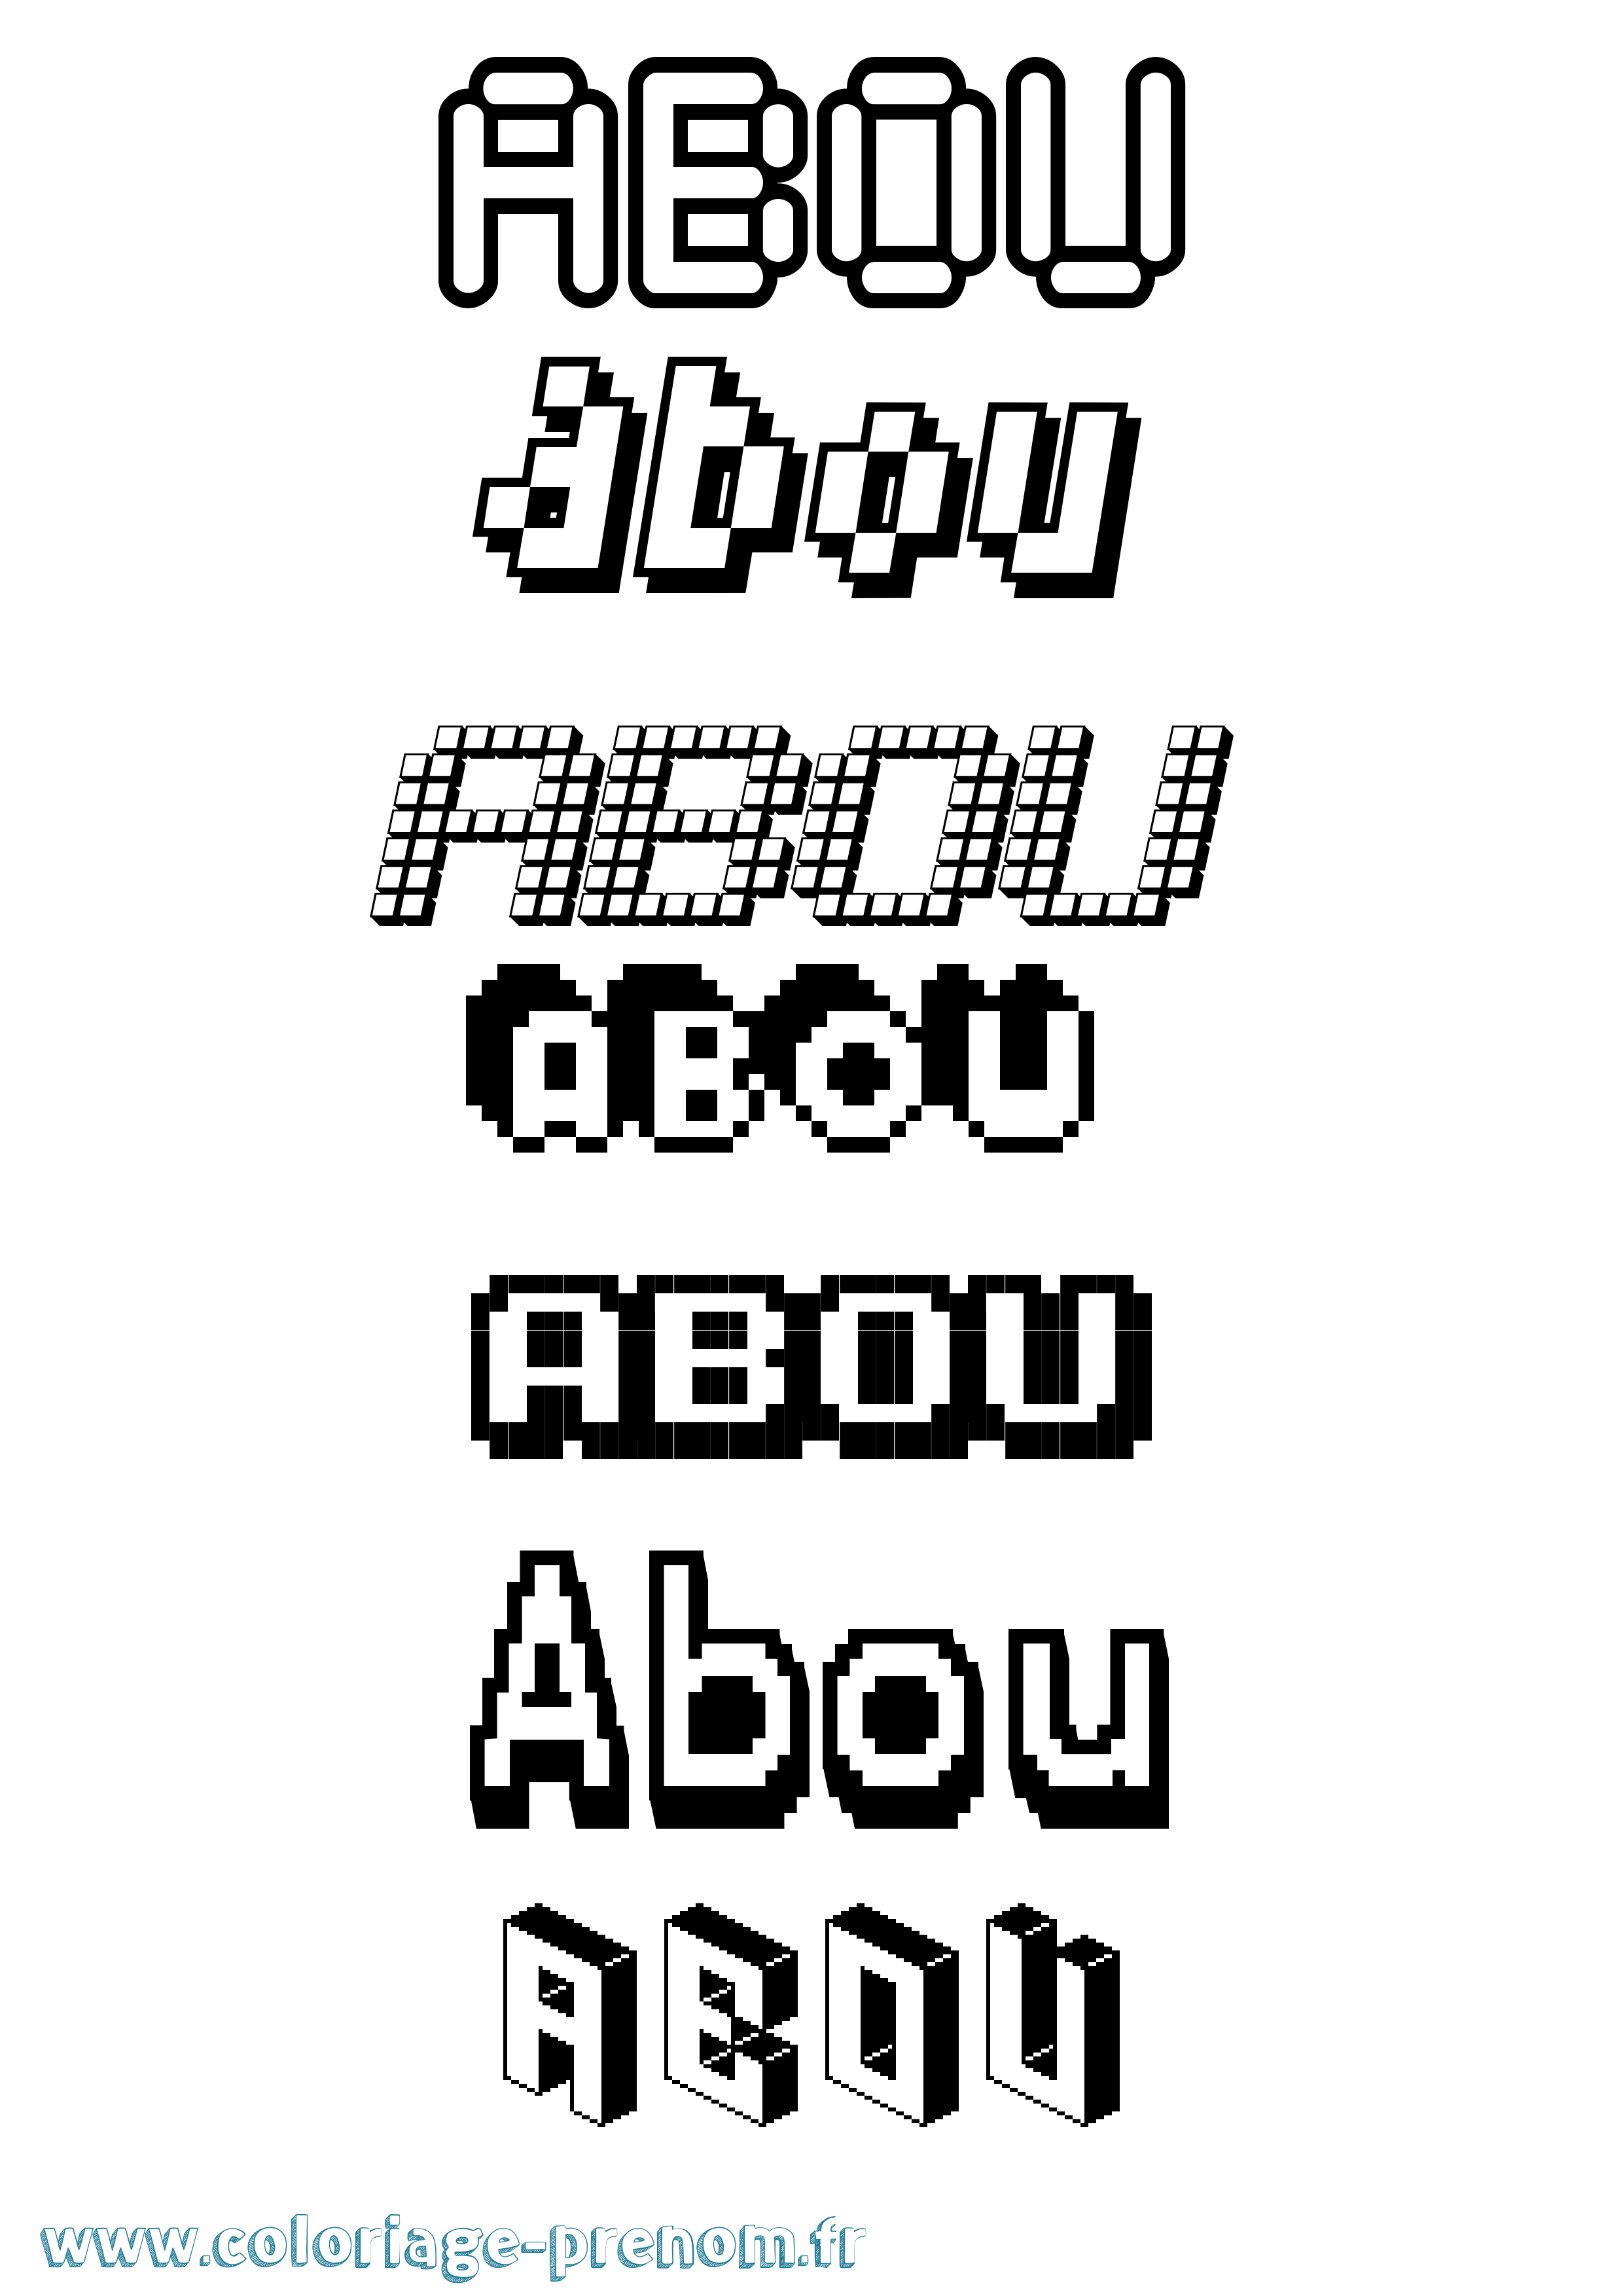 Coloriage prénom Abou Pixel